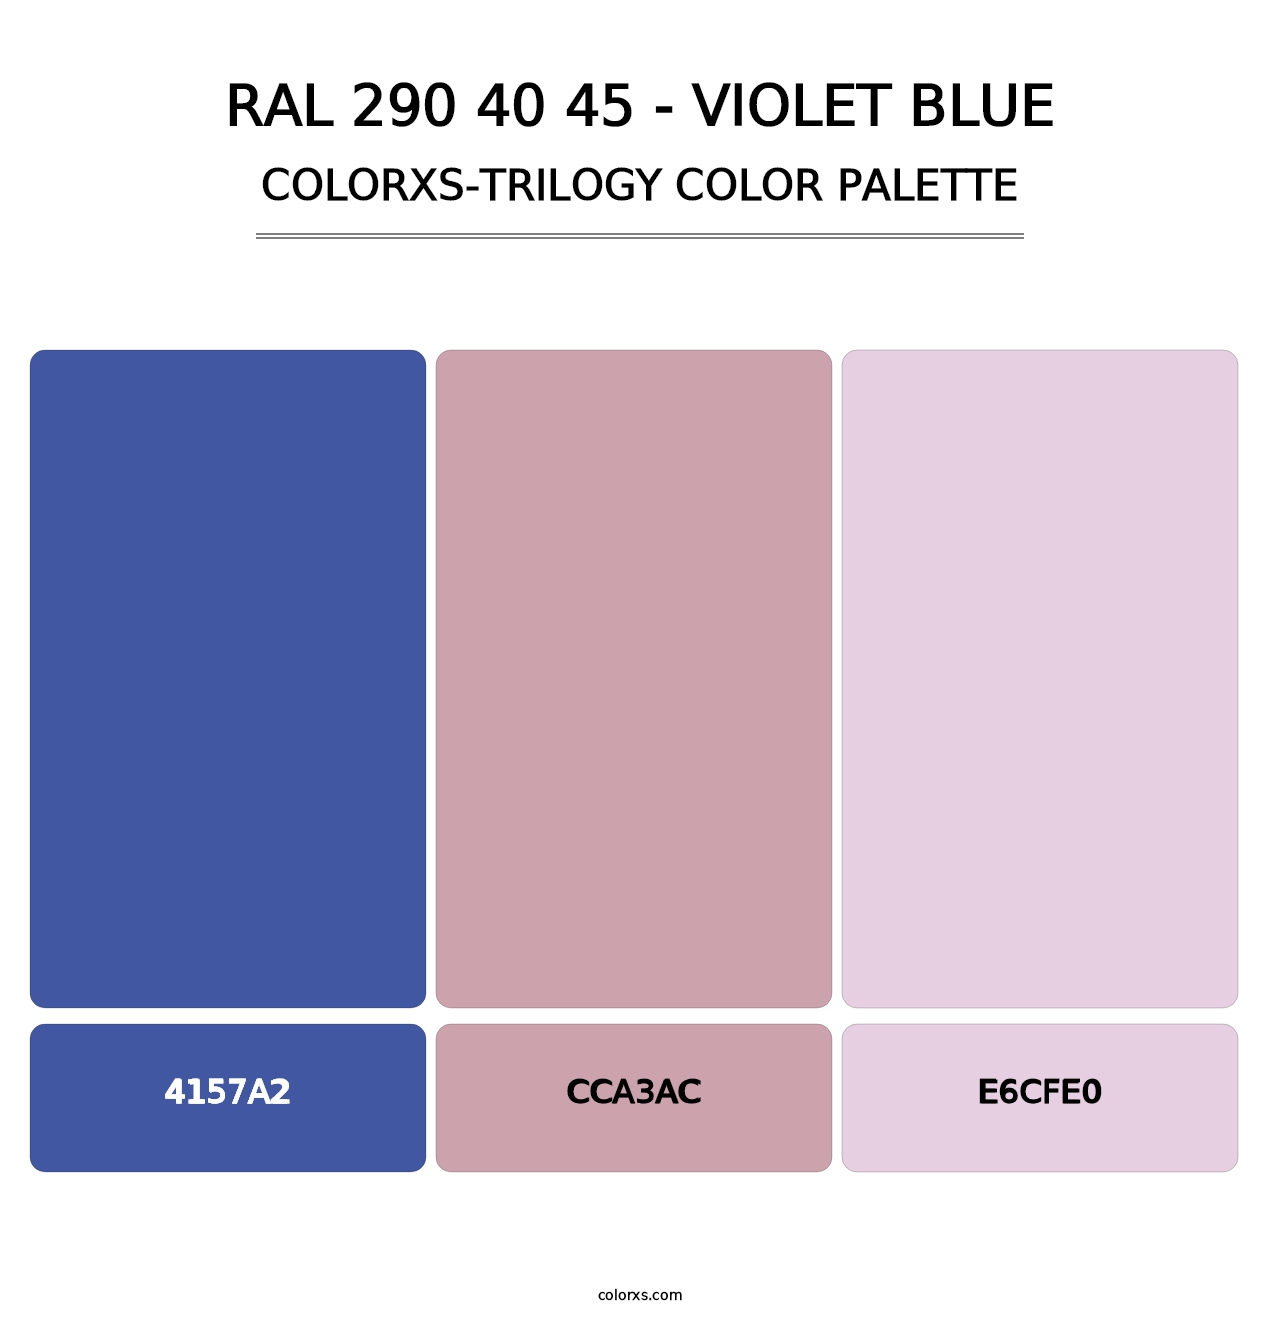 RAL 290 40 45 - Violet Blue - Colorxs Trilogy Palette